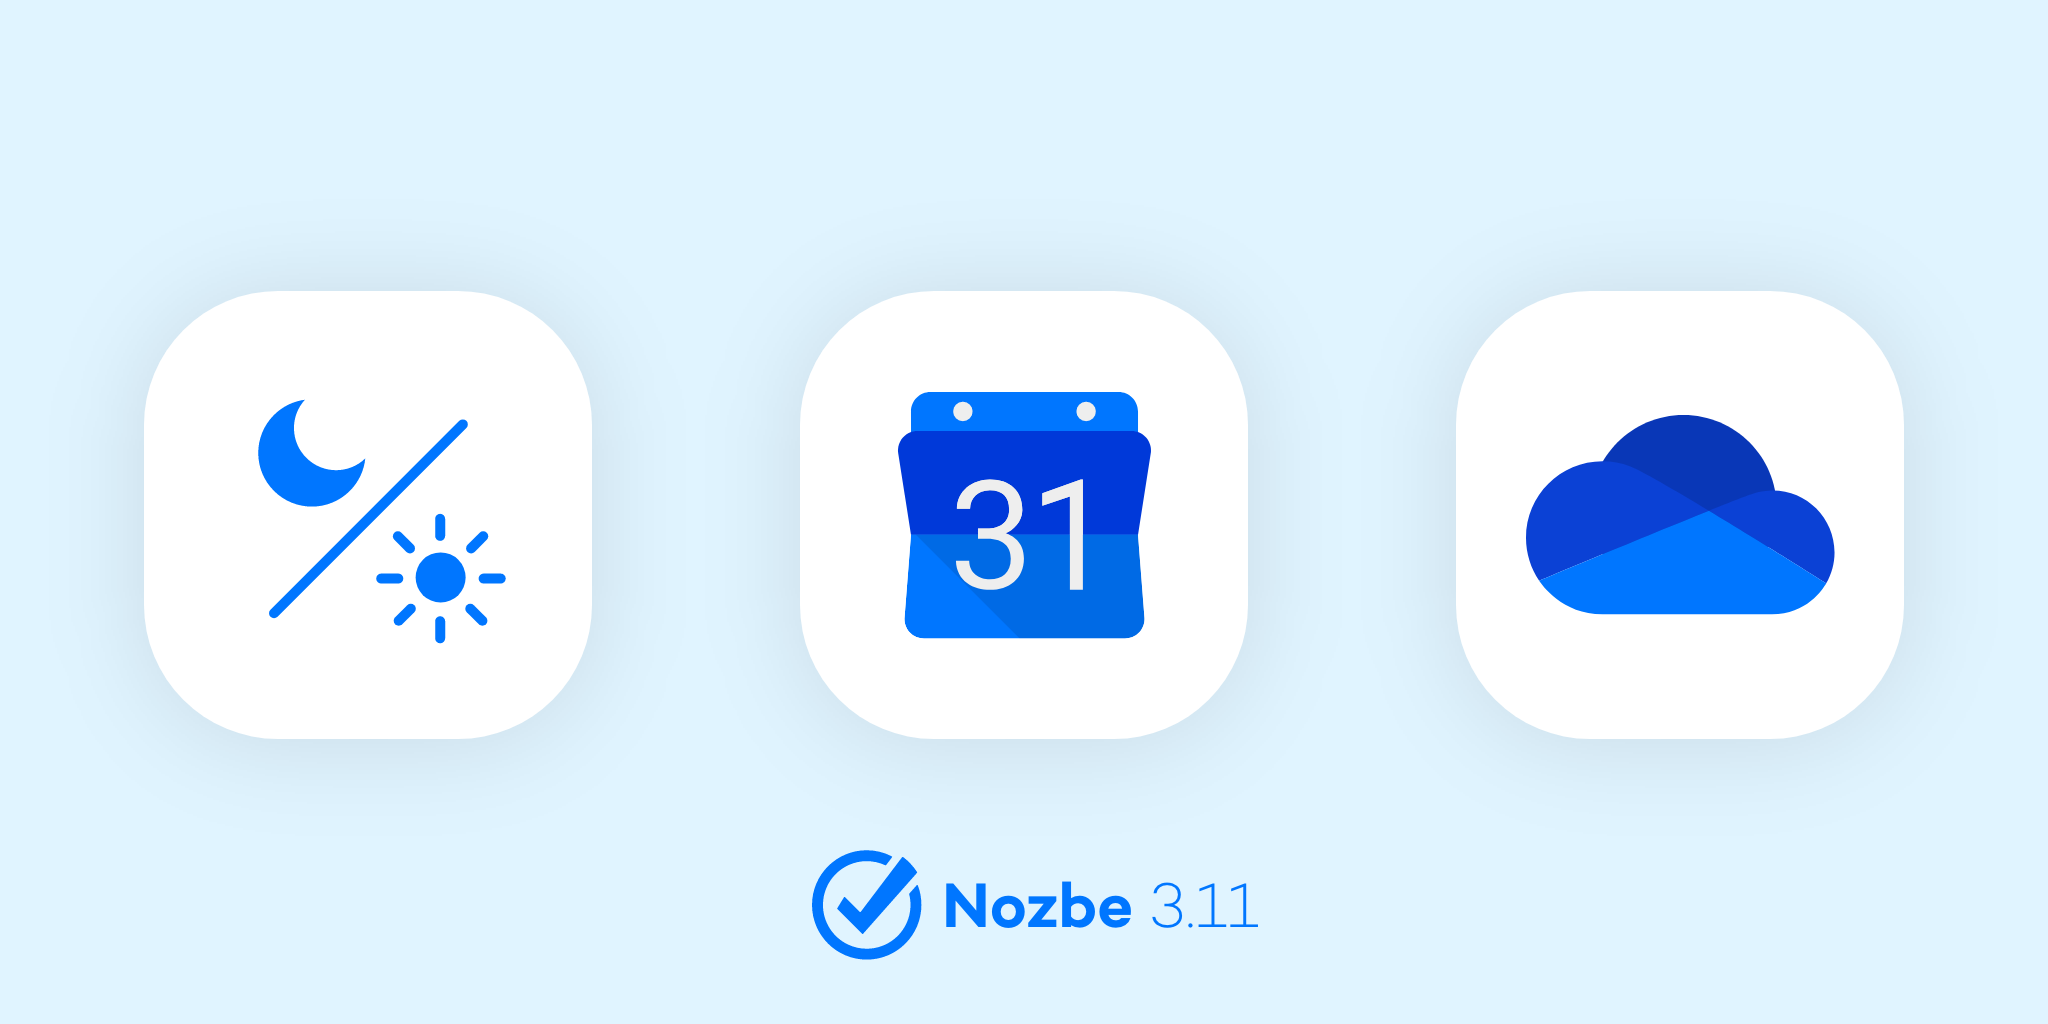 ノズビーNozbeの新機能 - 2019年12月